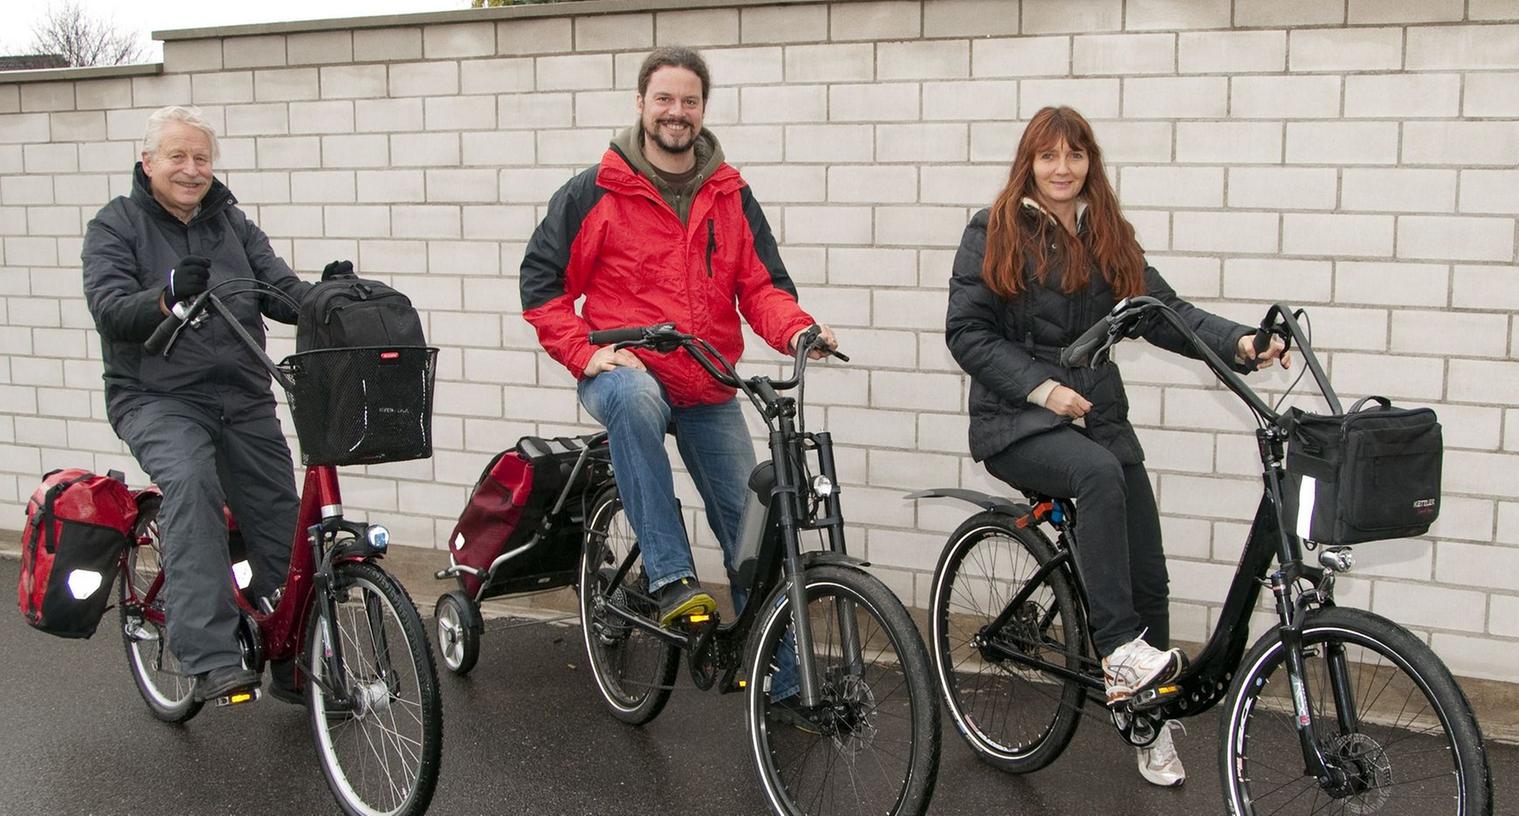 Ein Gepäckträger fehlt, stattdessen ist ein Halter für Packtaschen am Schutzblech des "optimalen Fahrrads" montiert. Helmut Wirkner, Markus und Angela Streck (von links) sind begeistert.